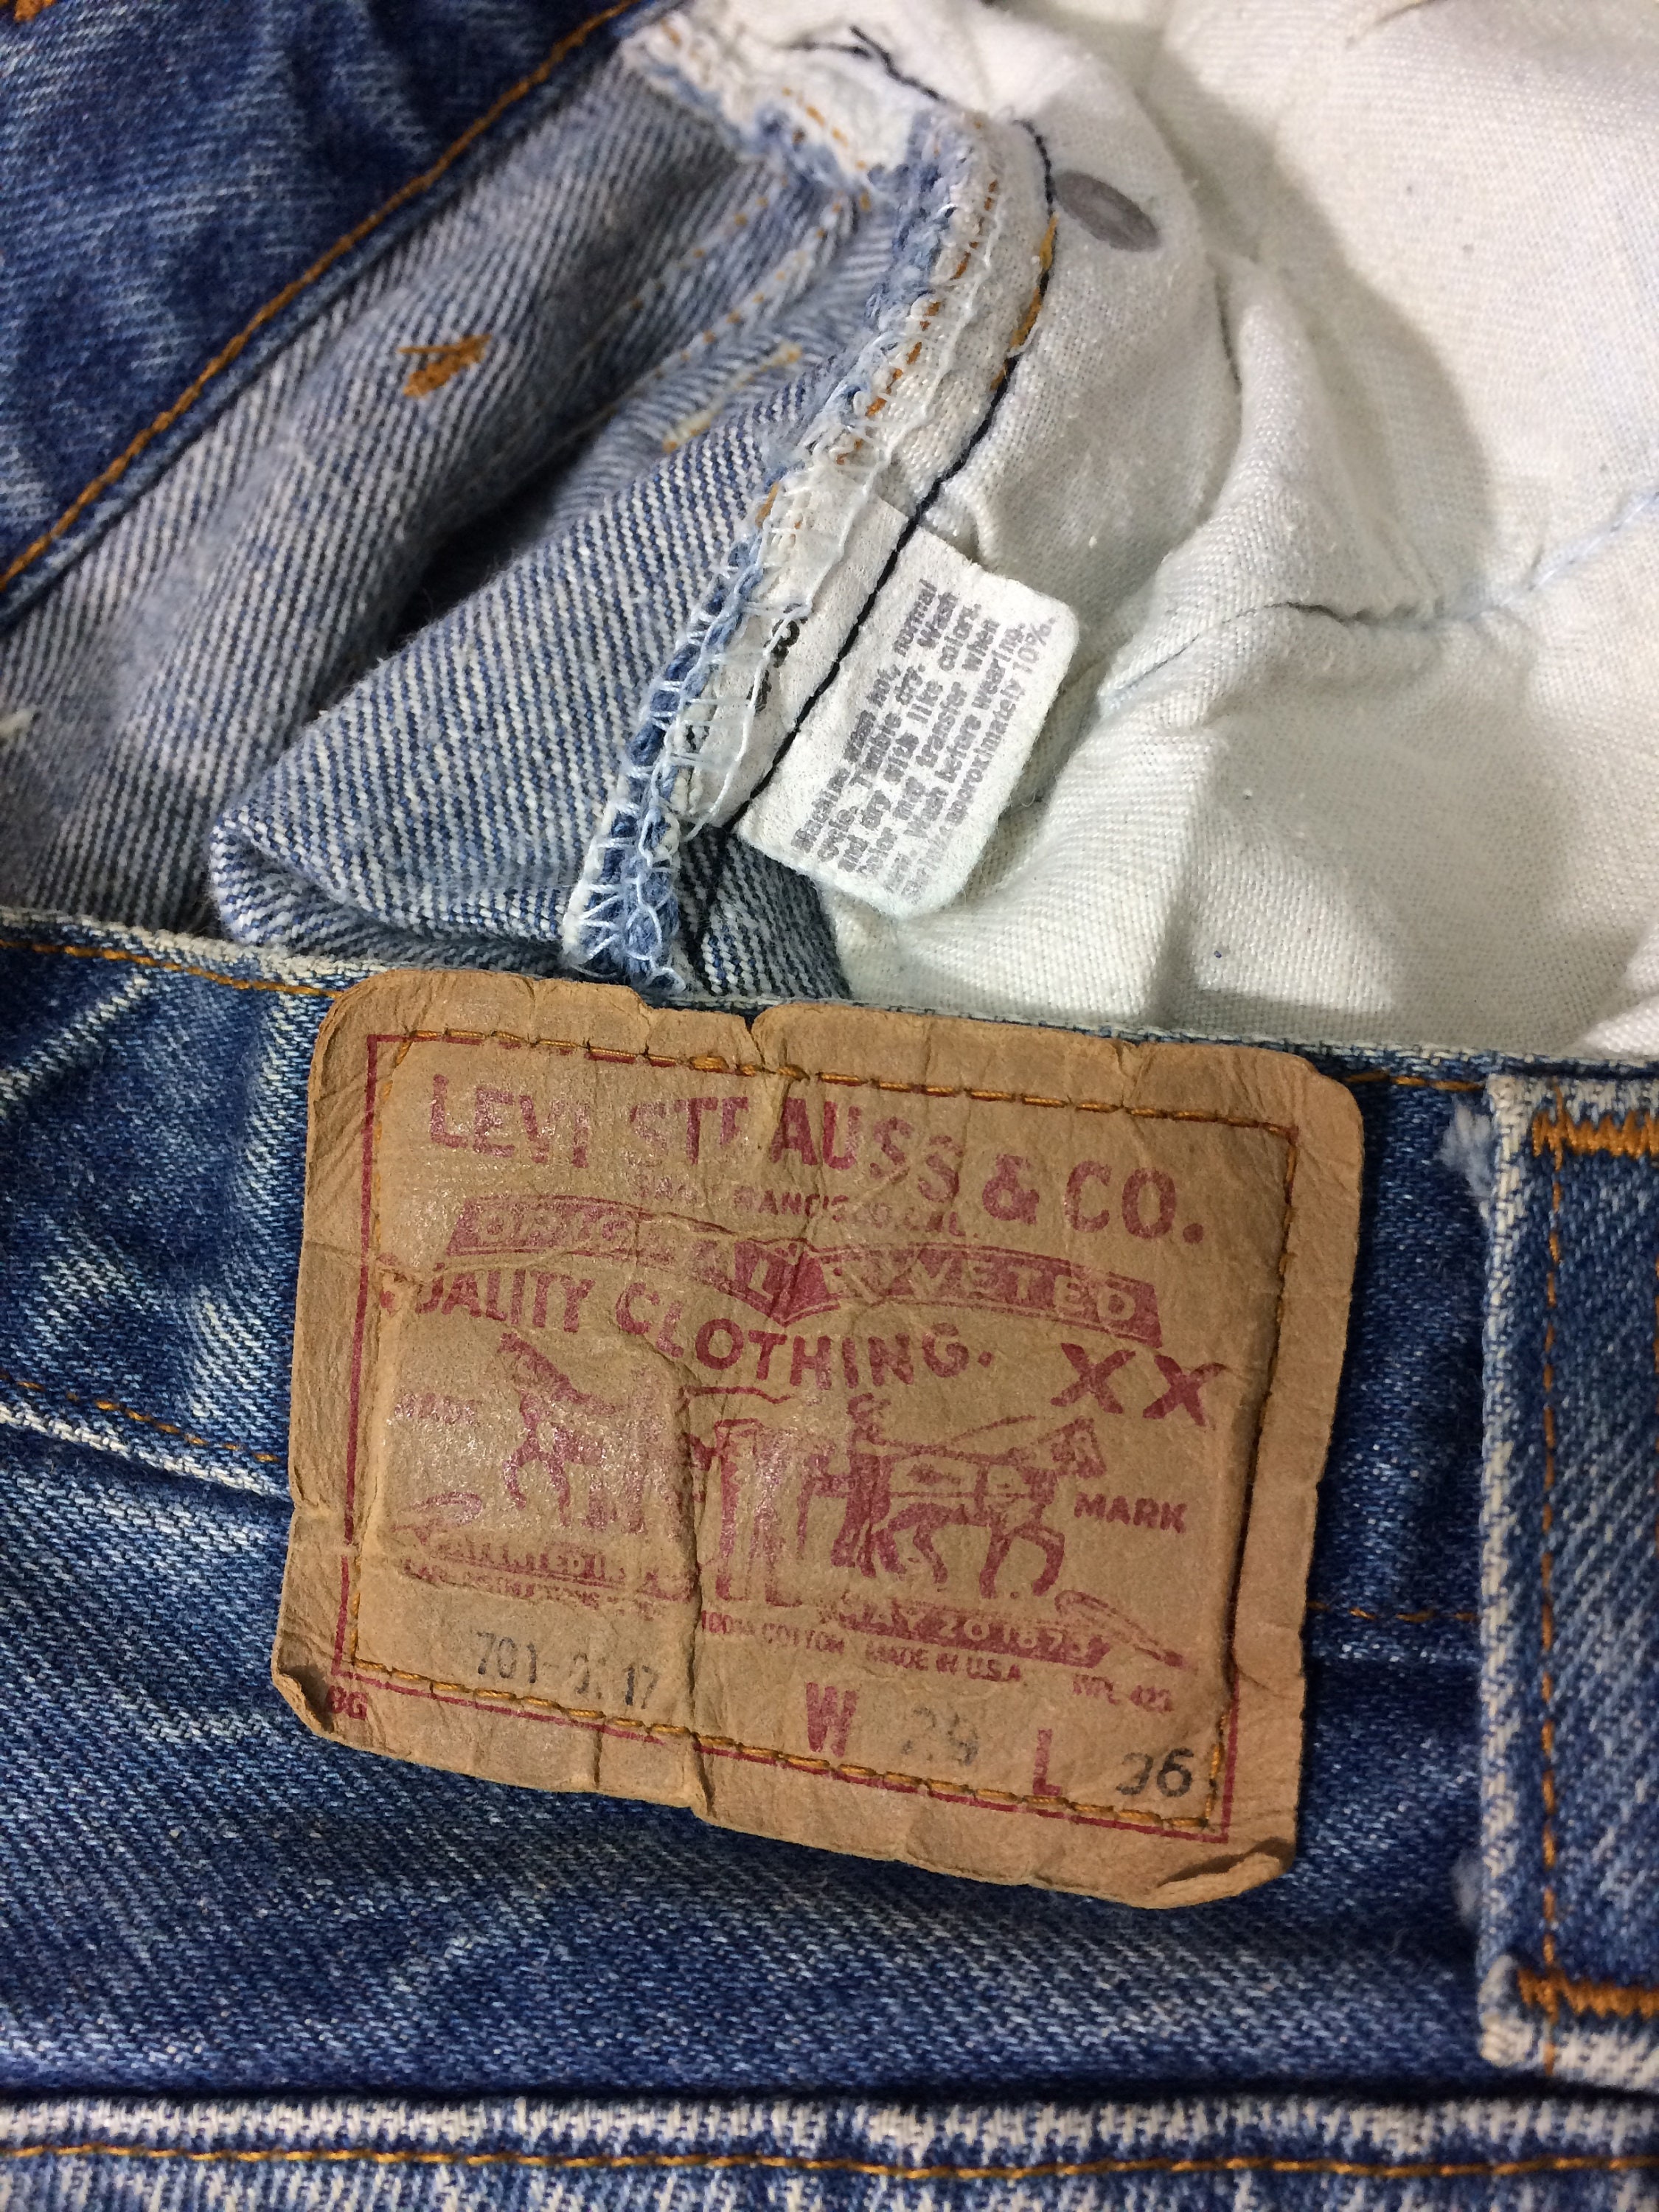 Sz 27 Vintage Levis 701 Women's Button Fly Jeans W27 L30 | Etsy